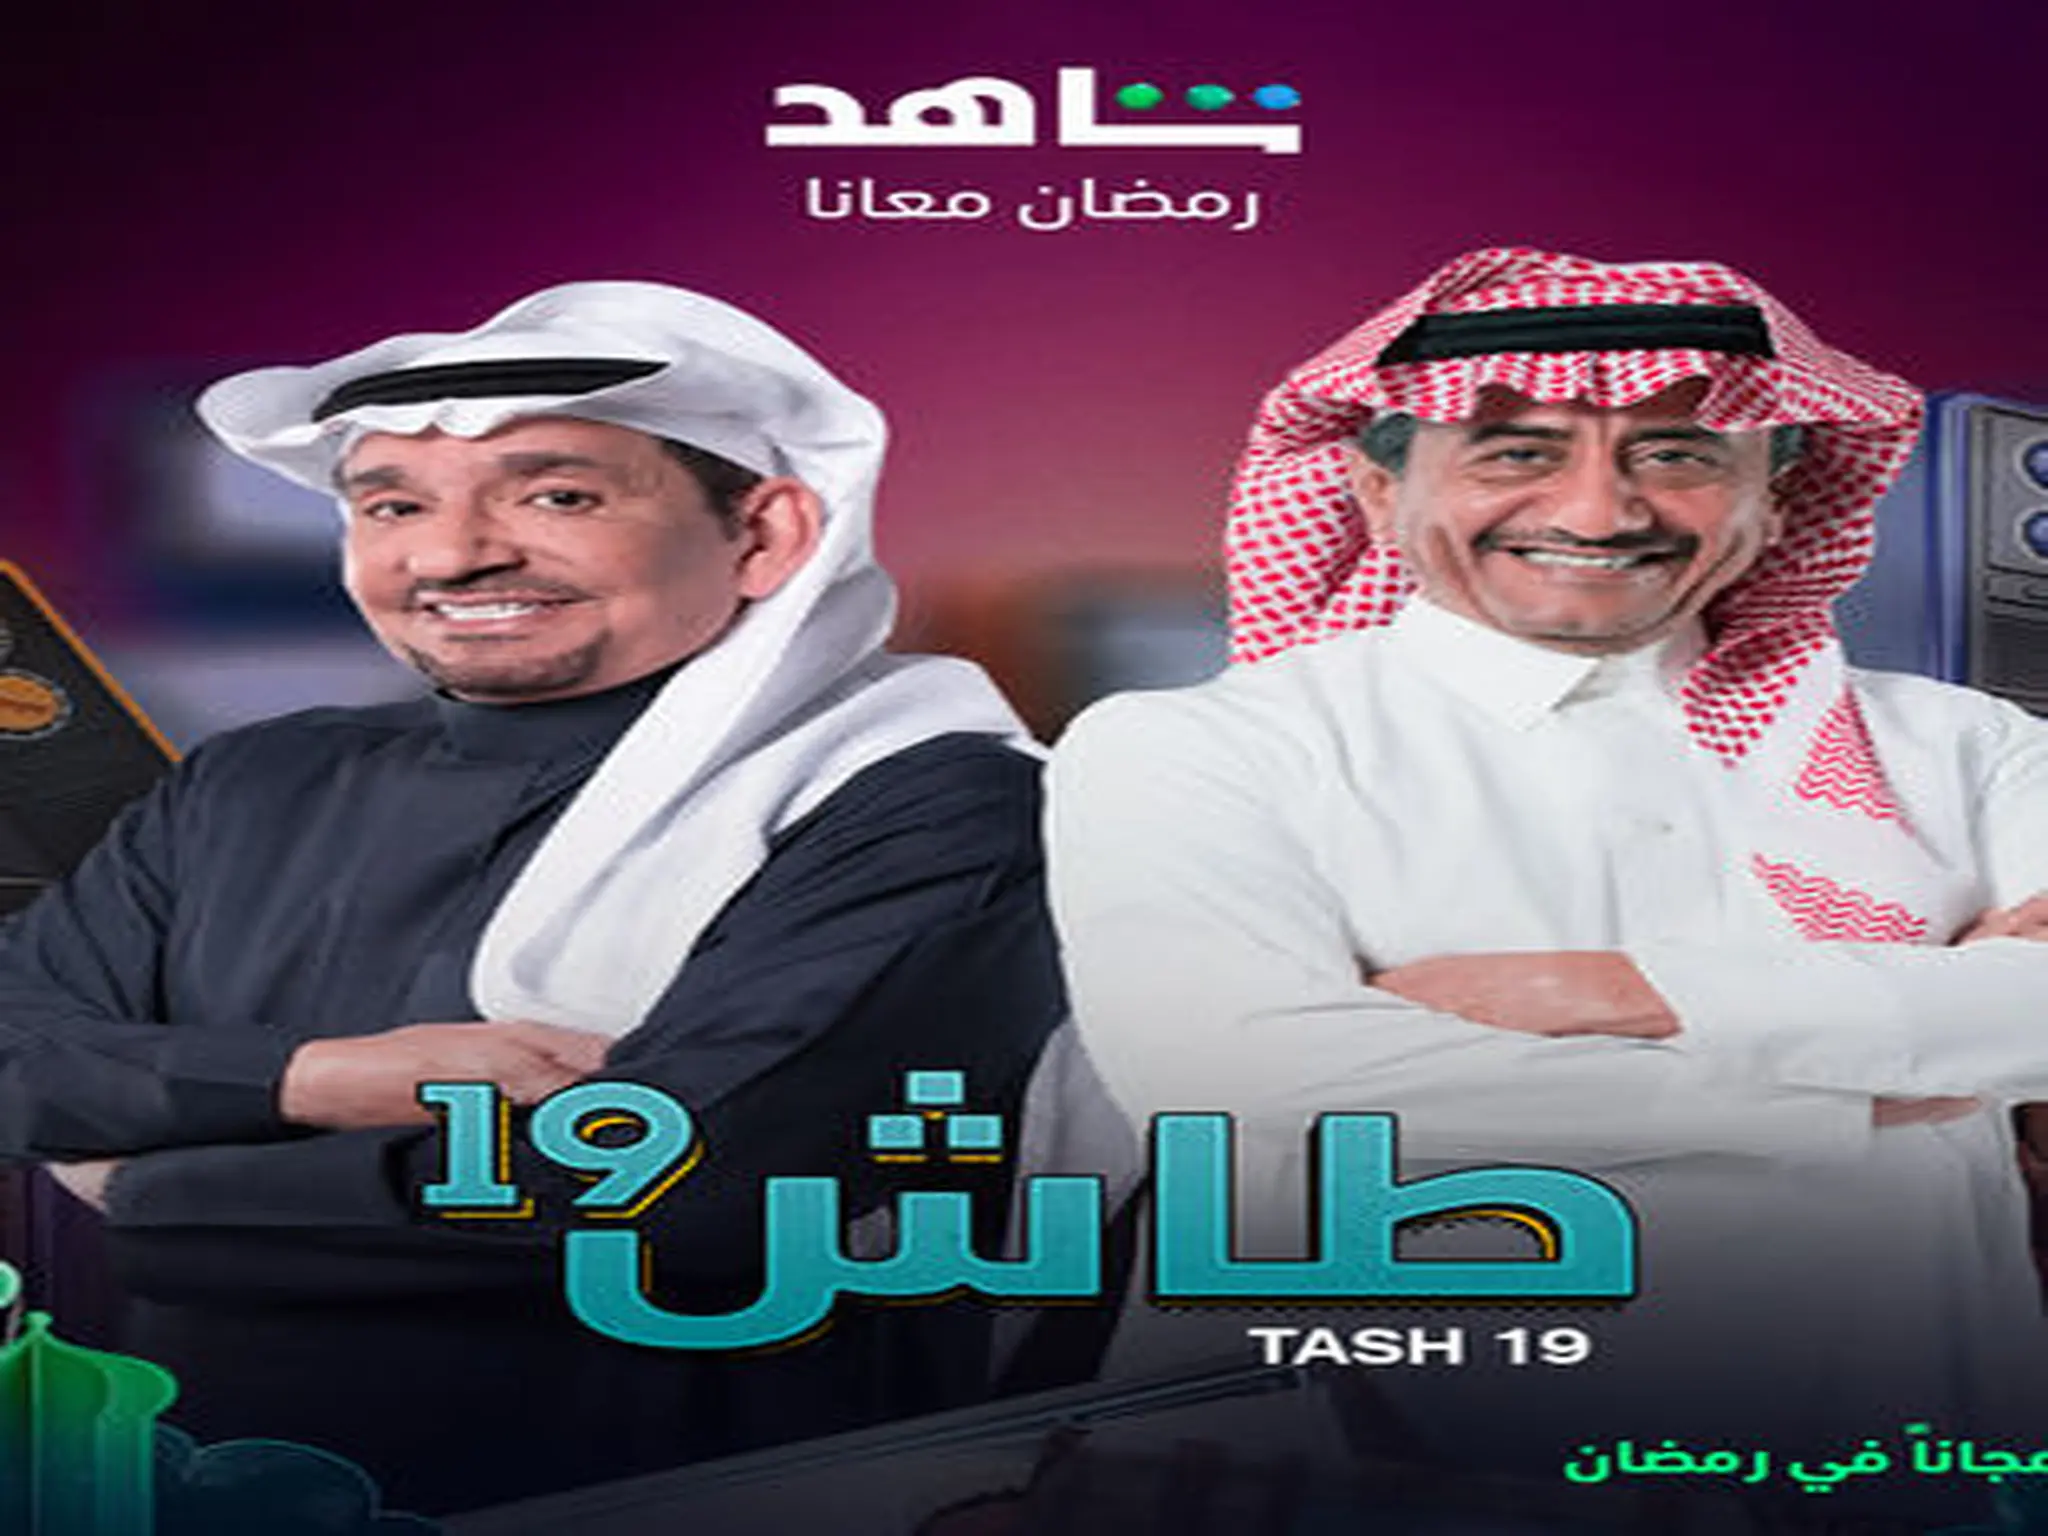 موعد مسلسل "طاش ما طاش" الجزء 19 العودة والقنوات الناقلة له رمضان 2023